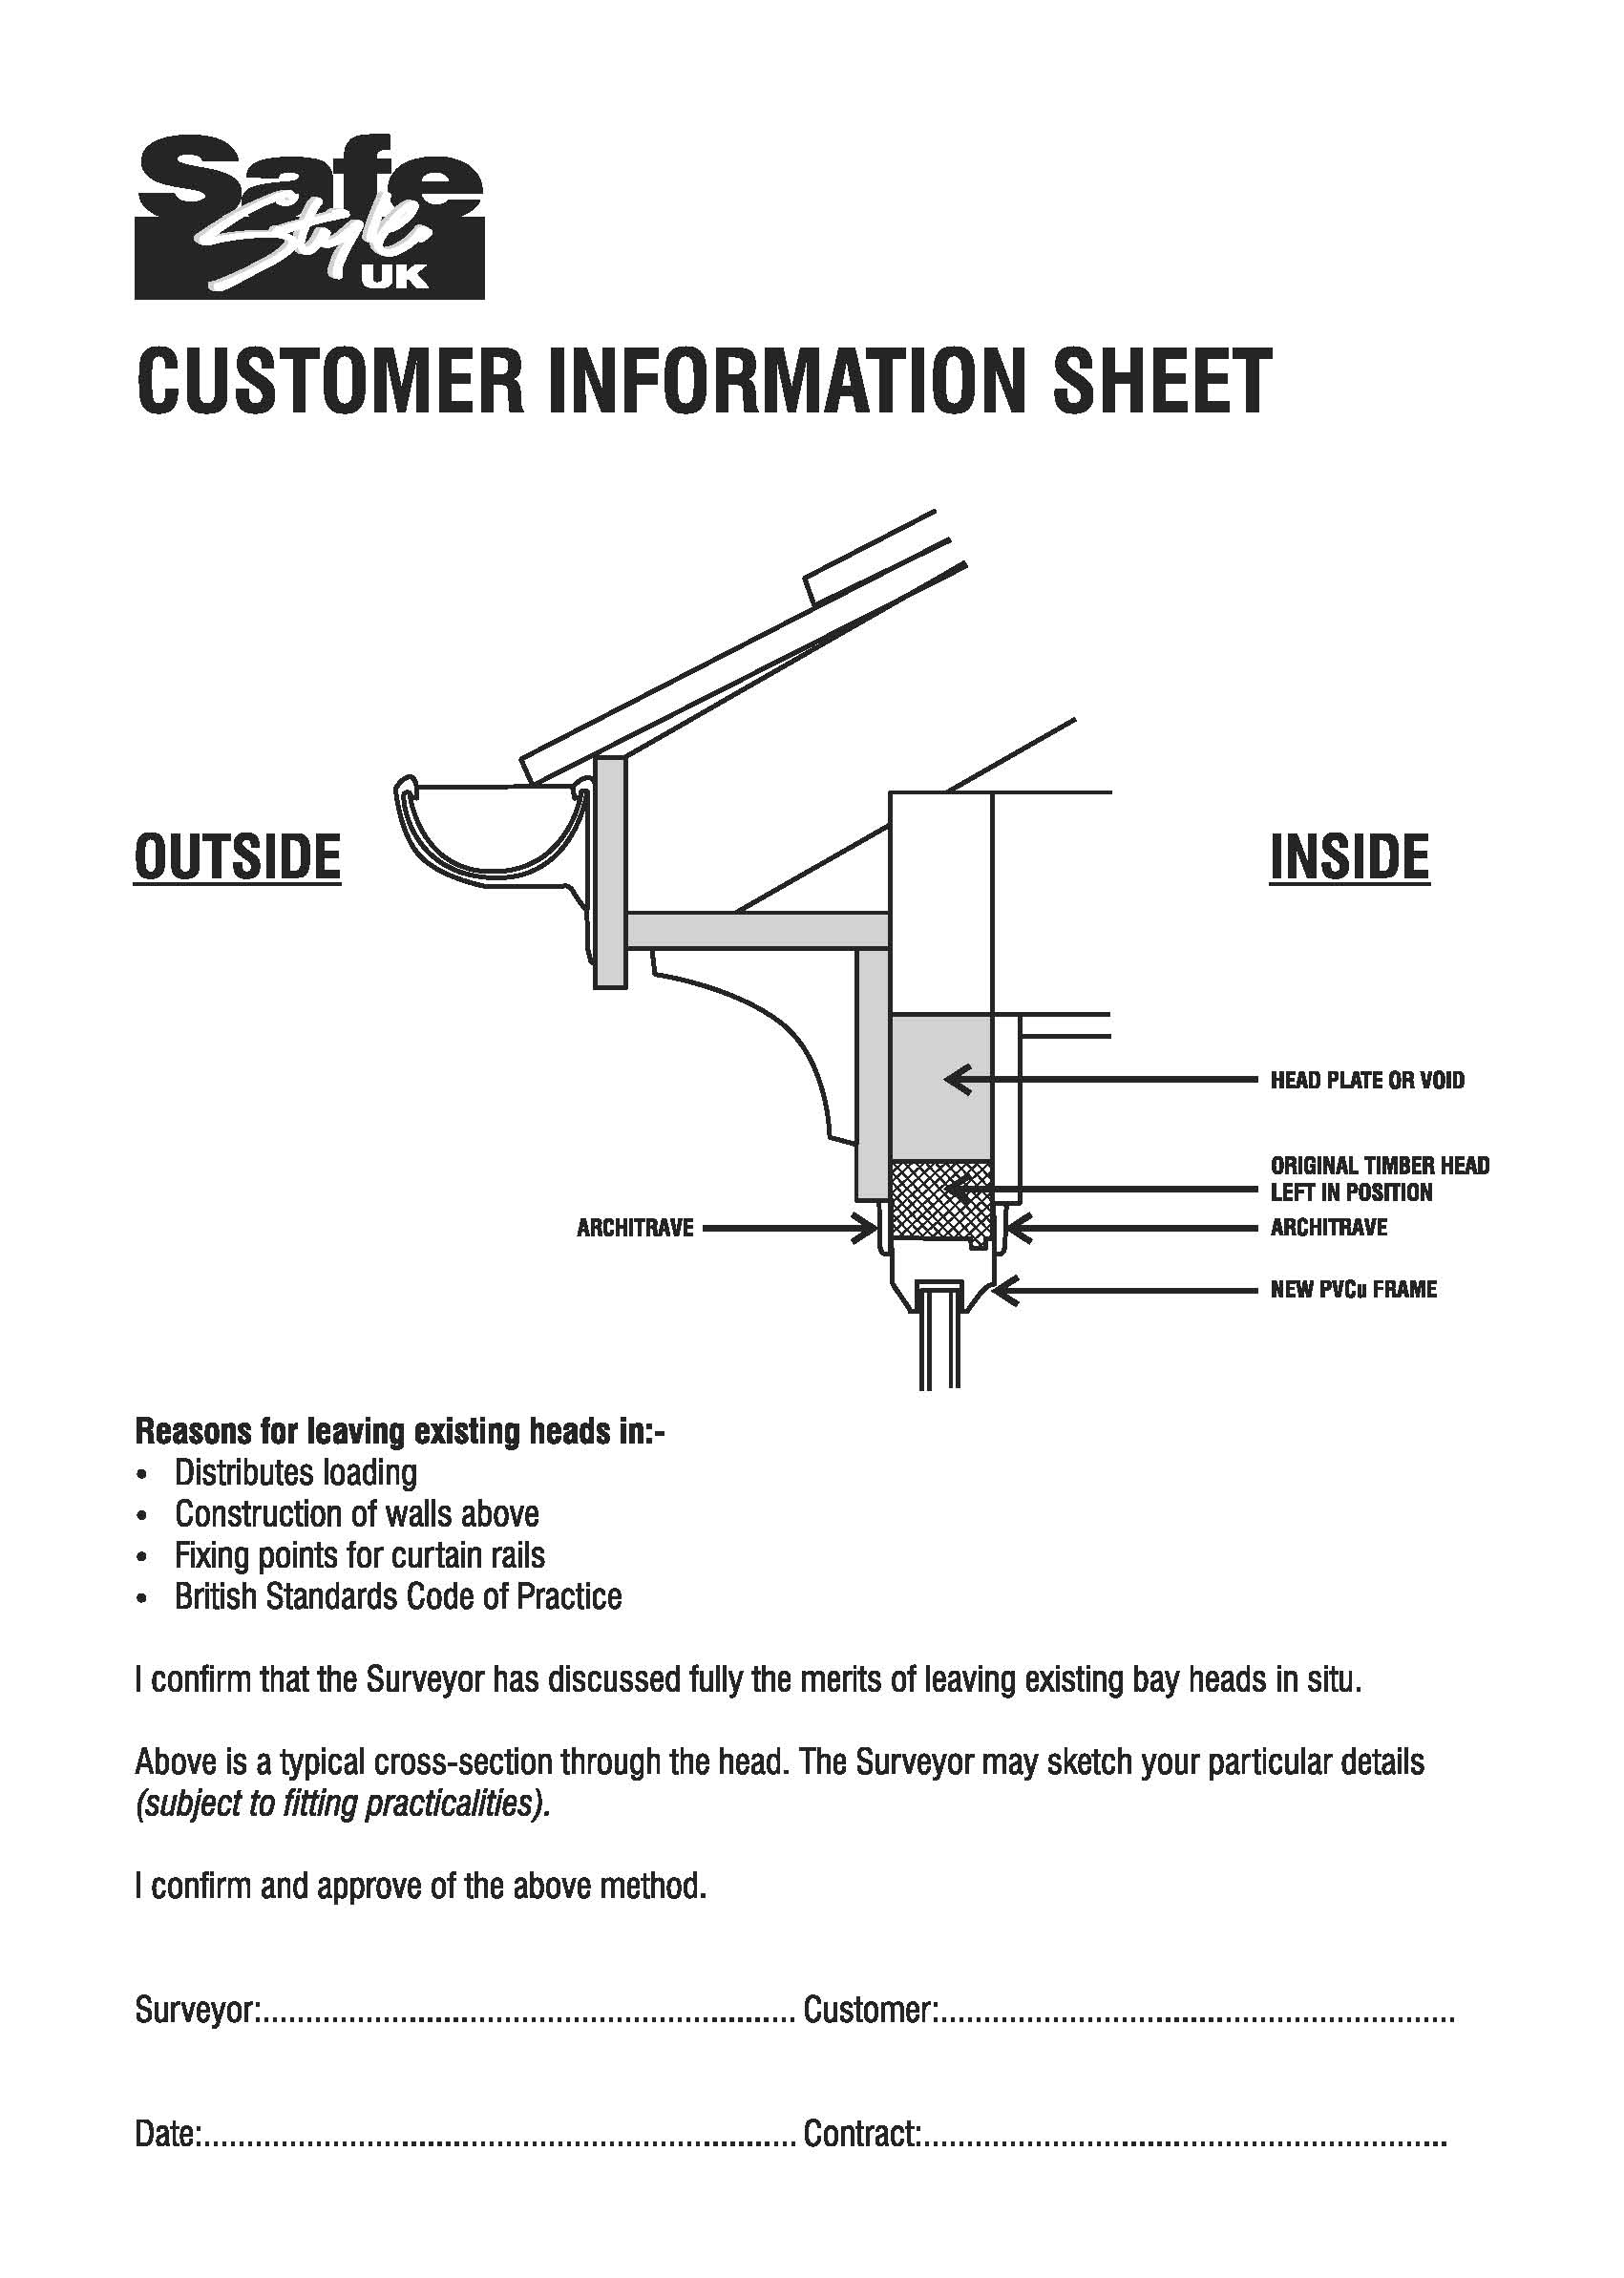 Customer_information_sheet.jpg